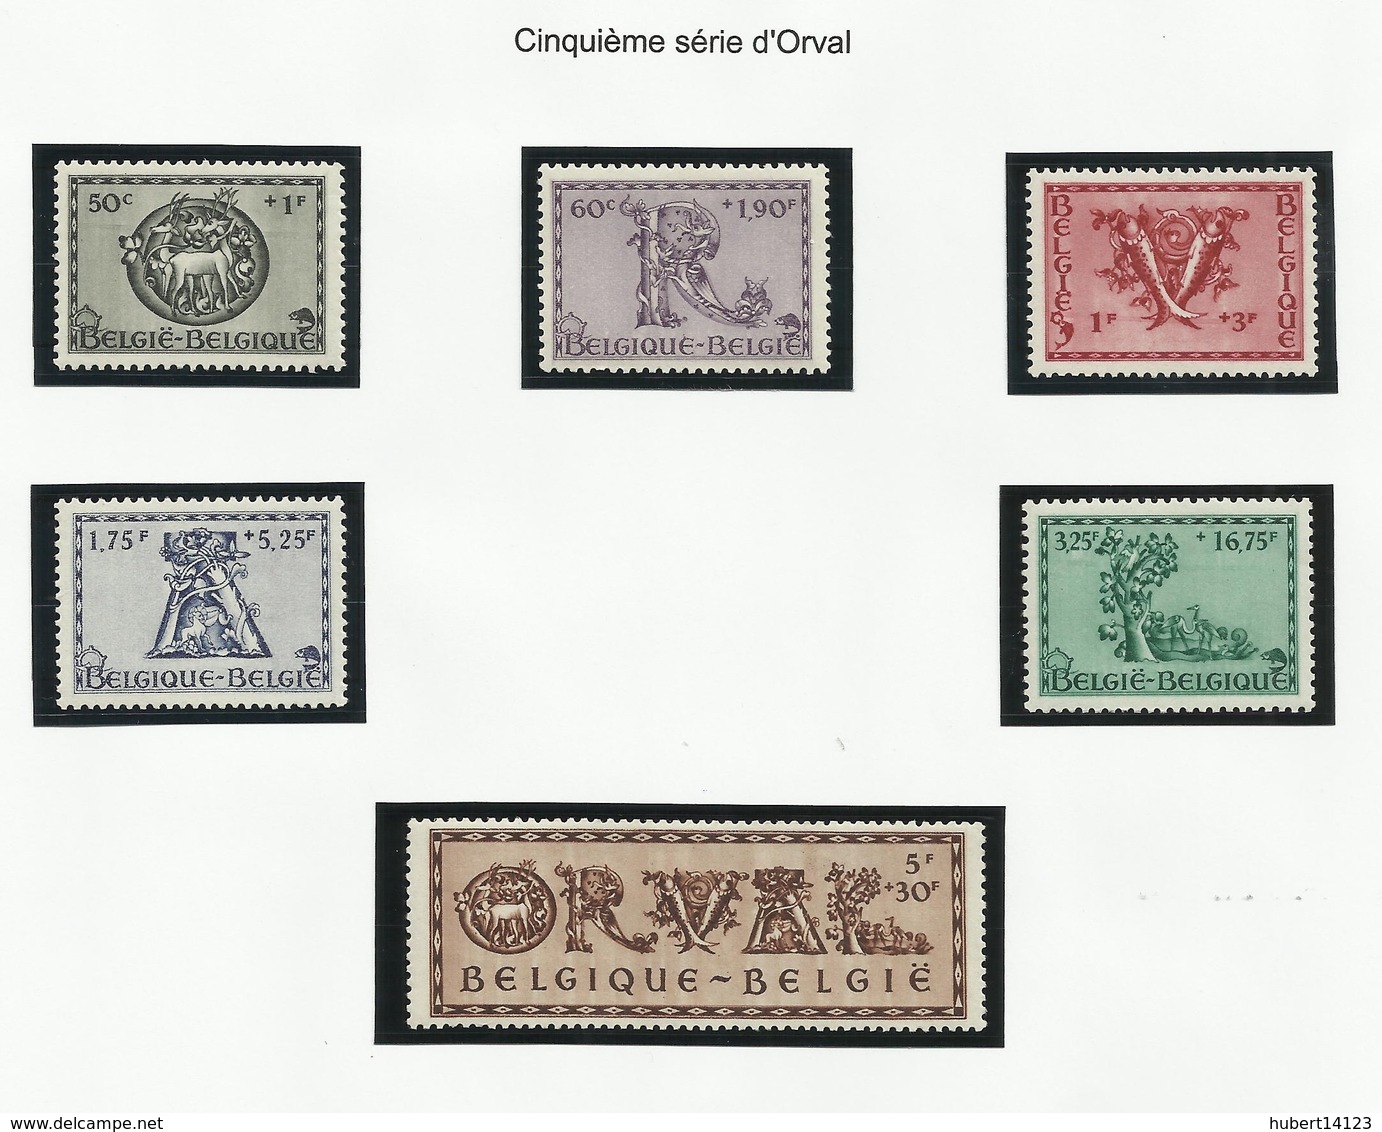 Belgique N° 568 à 640 de 1941 à 1943